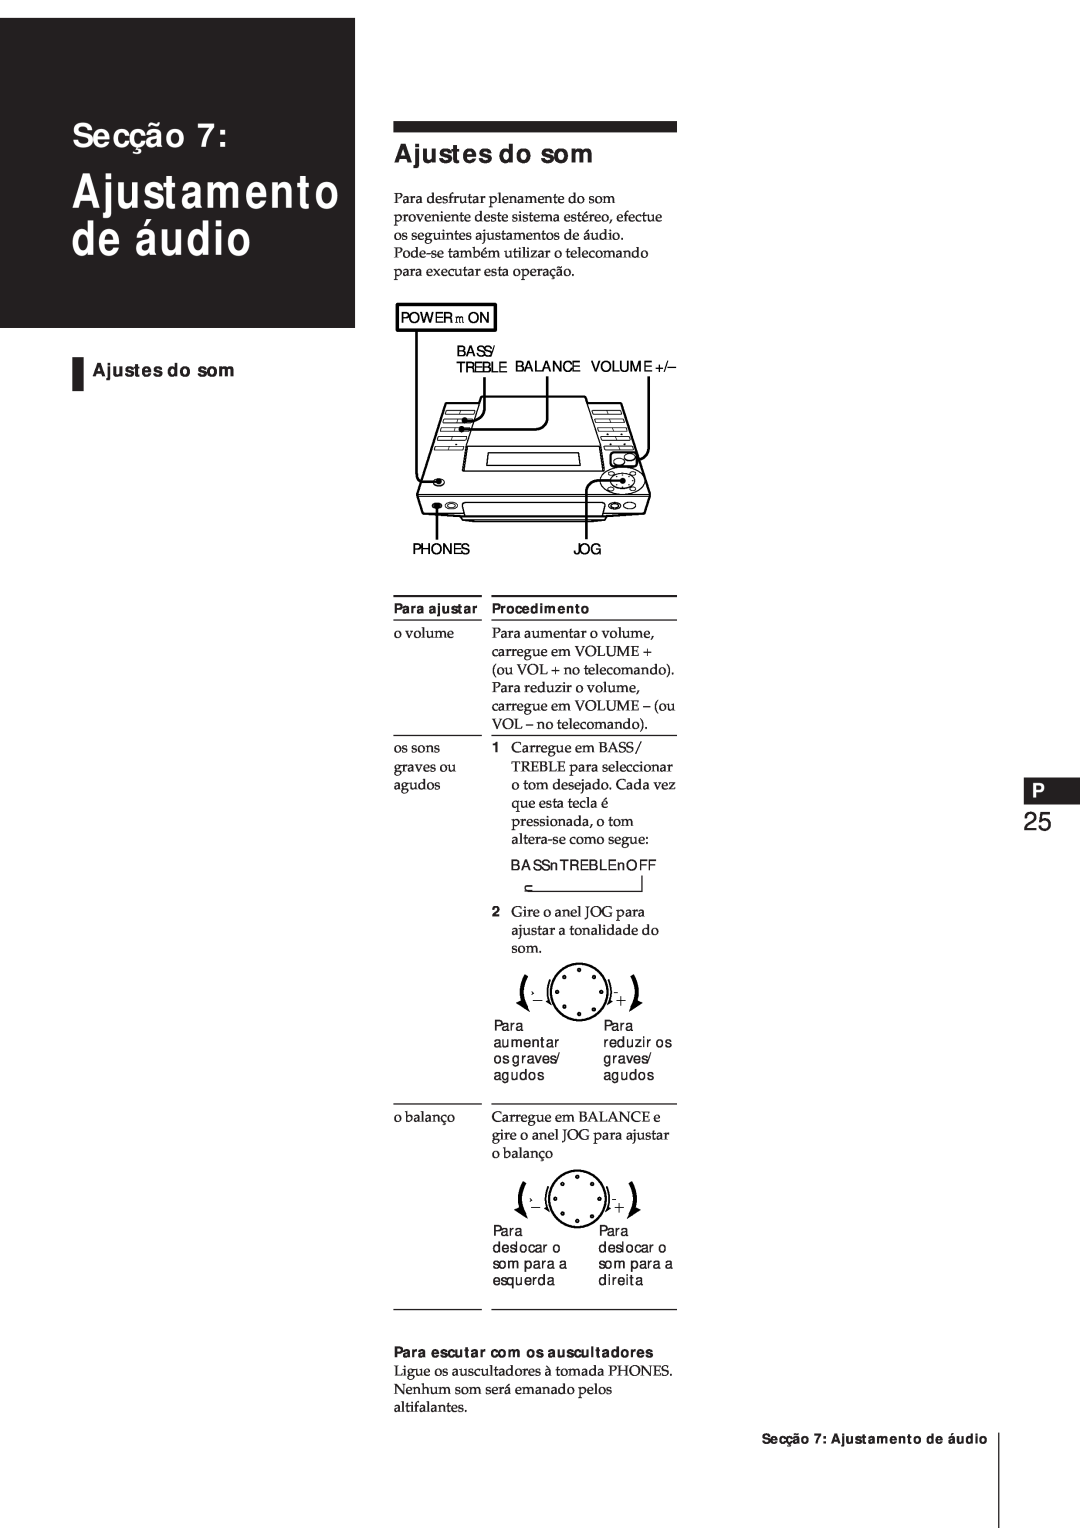 Sony MJ-L1A manual Ajustamento de áudio, Ajustes do som, Secção, Para escutar com os auscultadores 